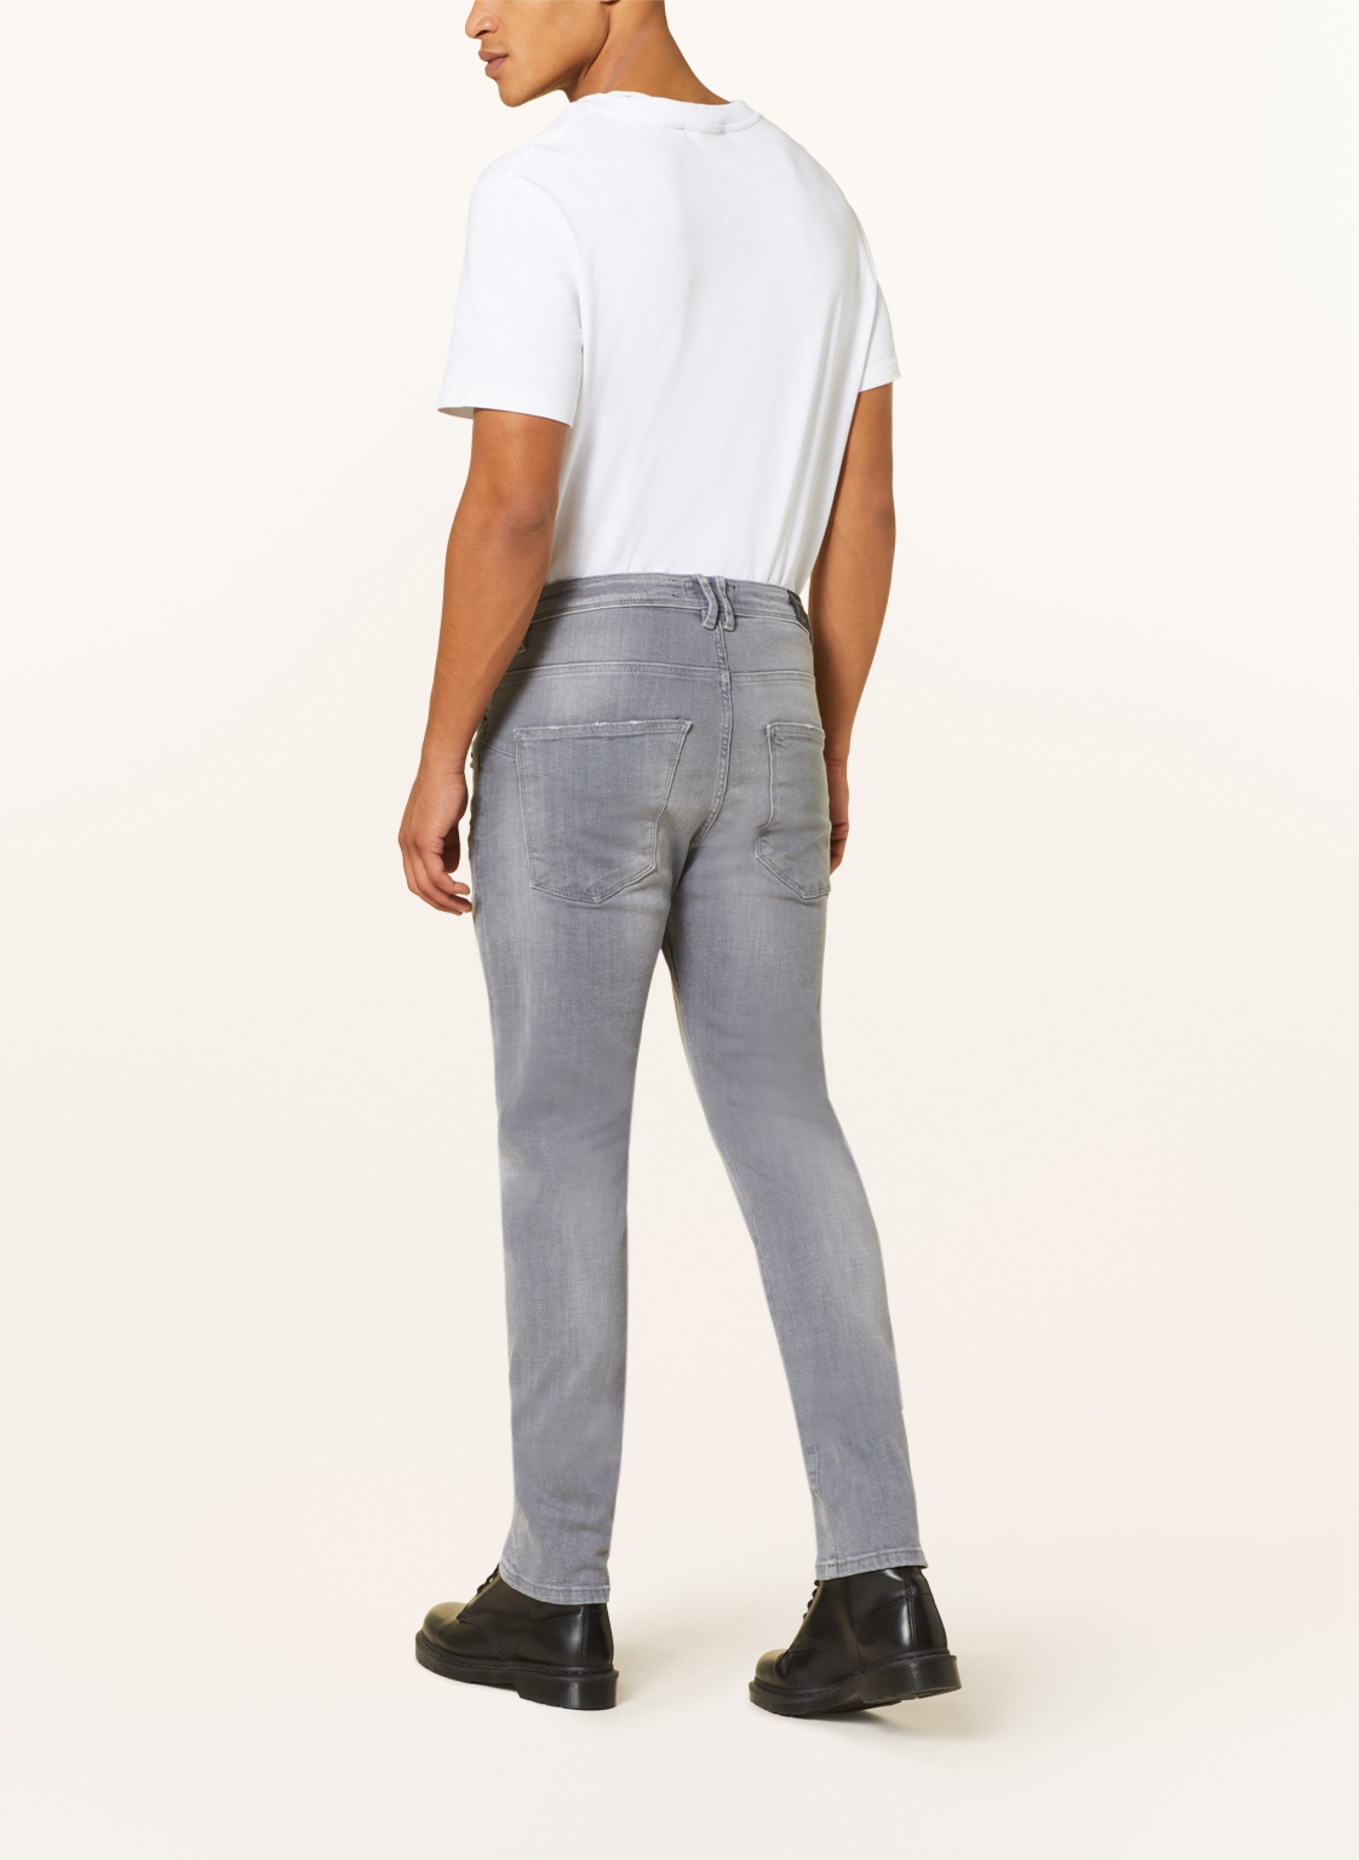 ELIAS RUMELIS Jeans ERZAVEN comfort fit, Color: 762 Silent Grey (Image 3)